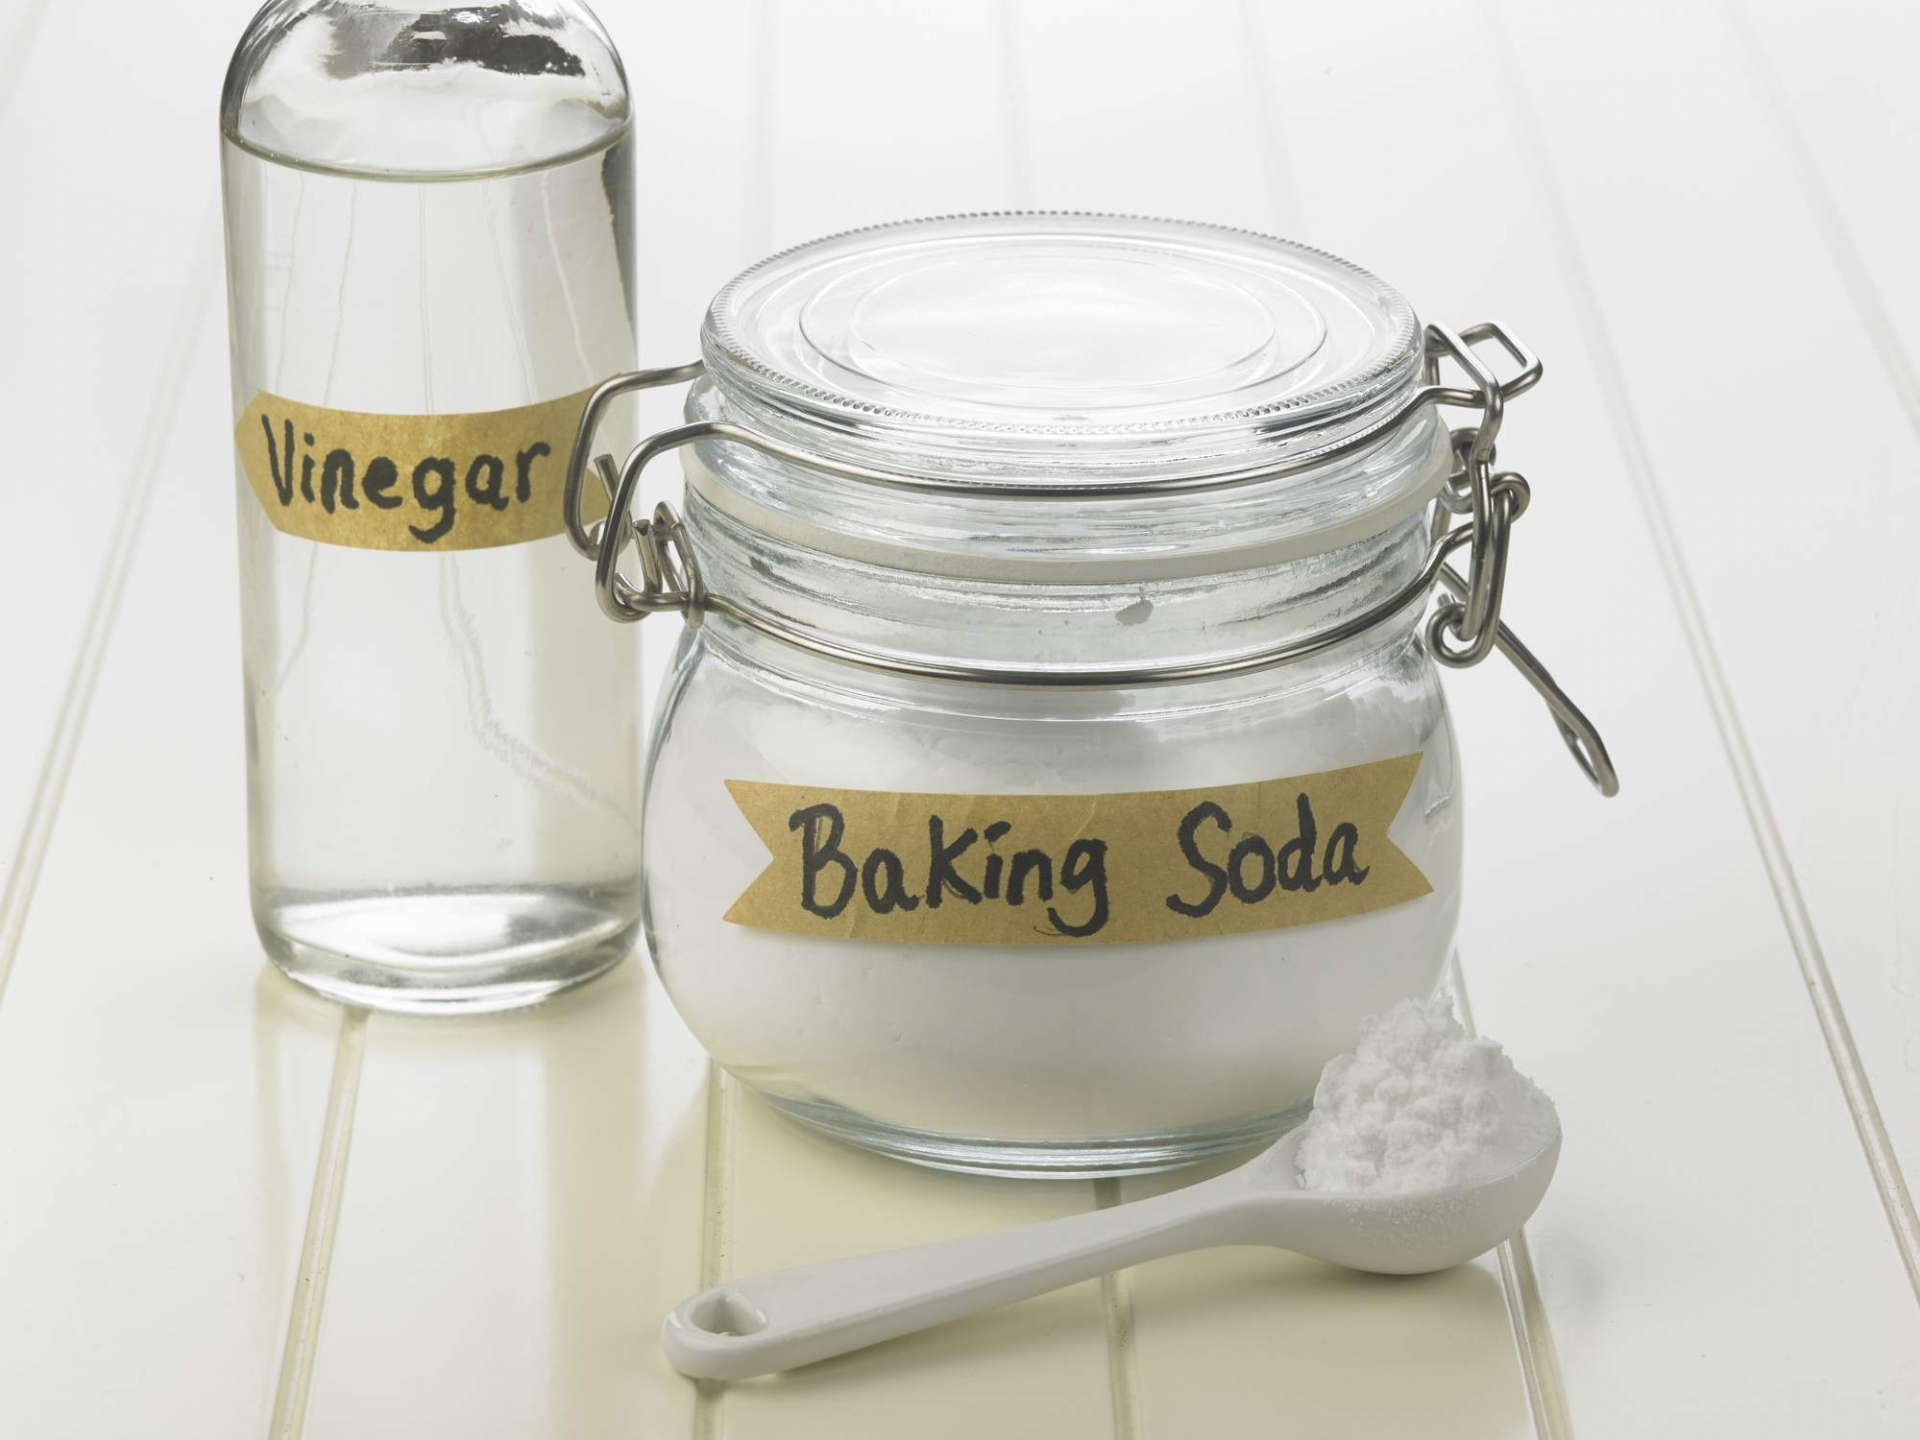 Baking soda có khả năng mài mòn, giấm trắng nguyên chất lại có tính axit.